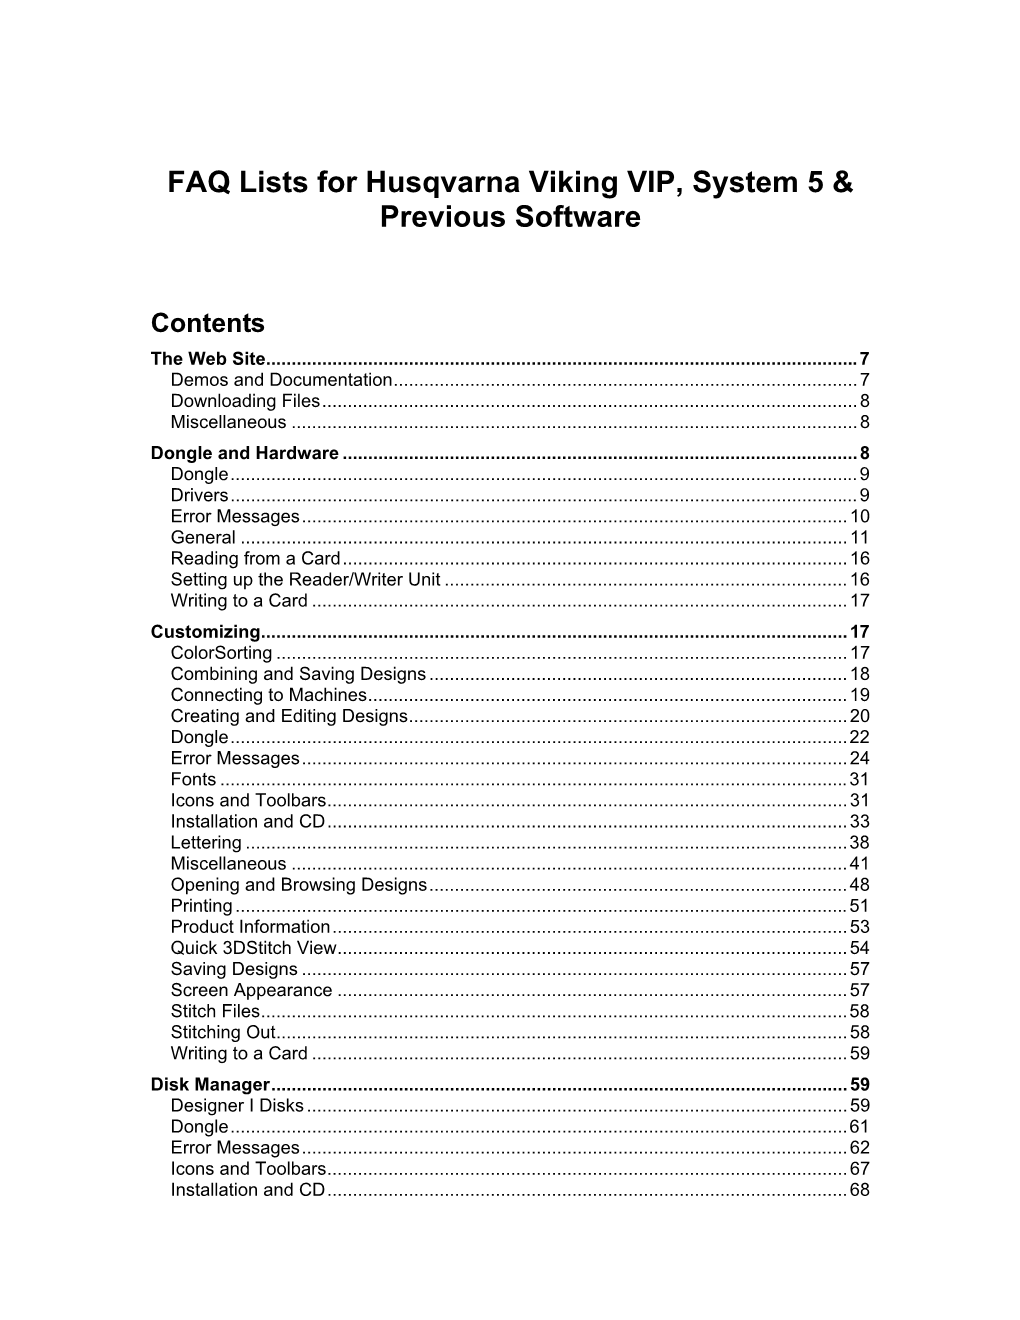 FAQ Lists for Husqvarna Viking Software